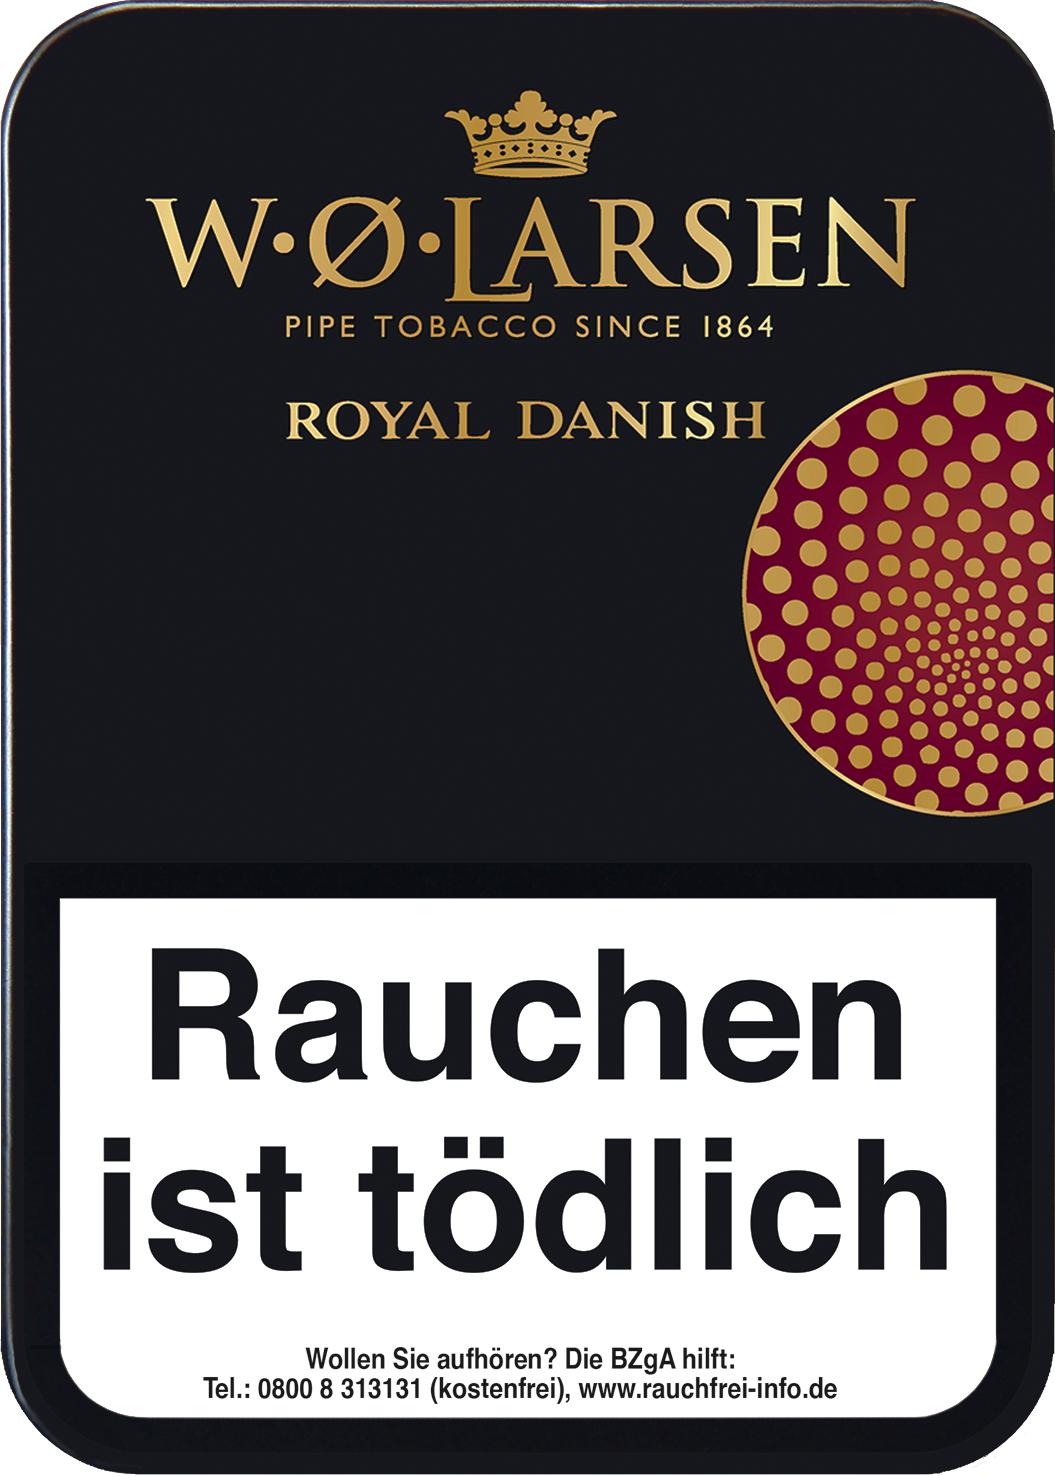 W.O. Larsen Royal Danish Pfeifentabak 1 x 100g Krüll